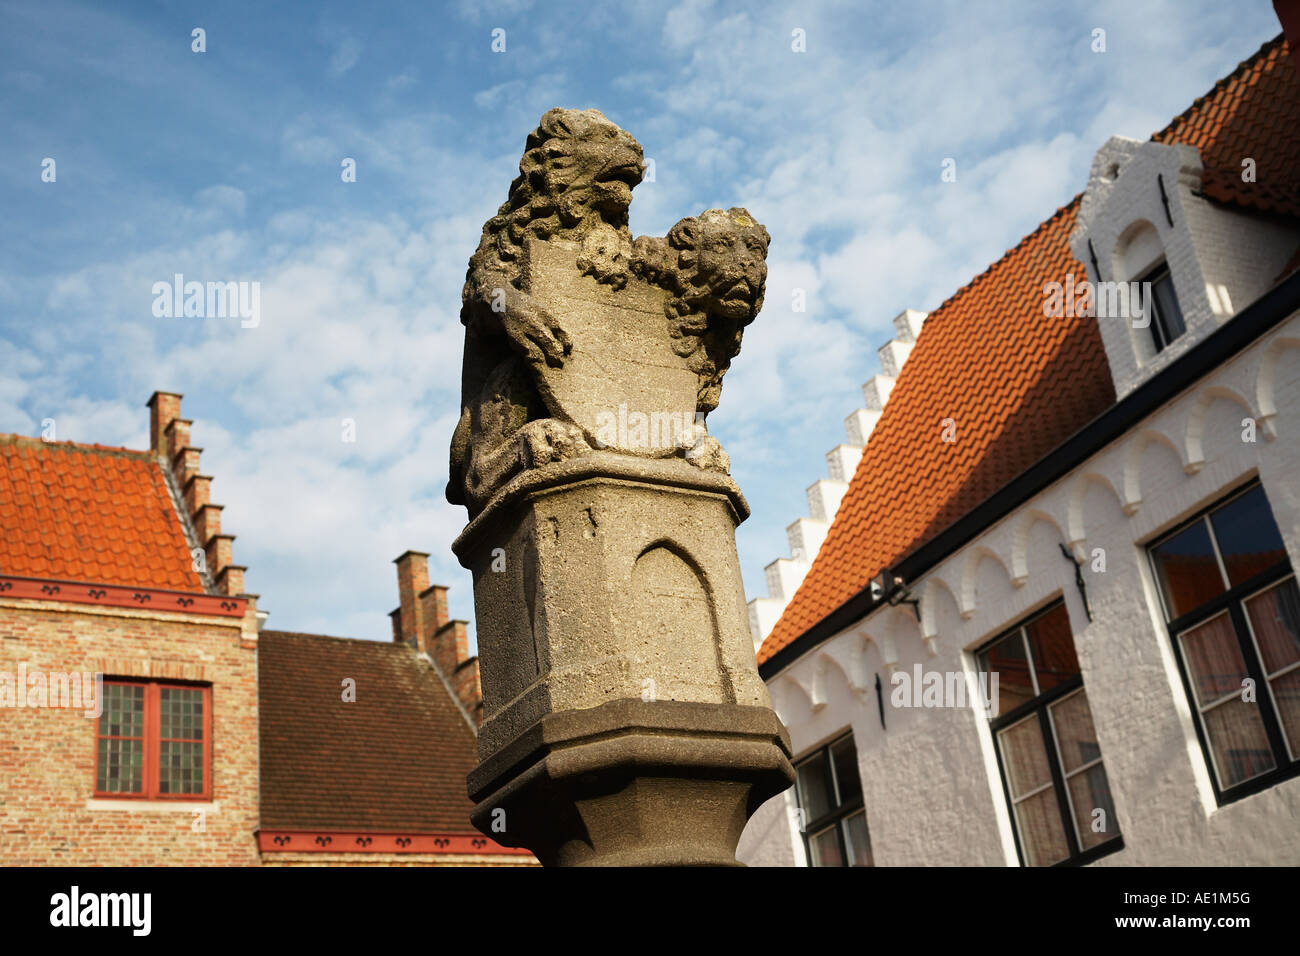 La colonne surmontée d'une paire de lions avec bâtiments typiquement flamande Huidenvettersplein Bruges Belgique Banque D'Images